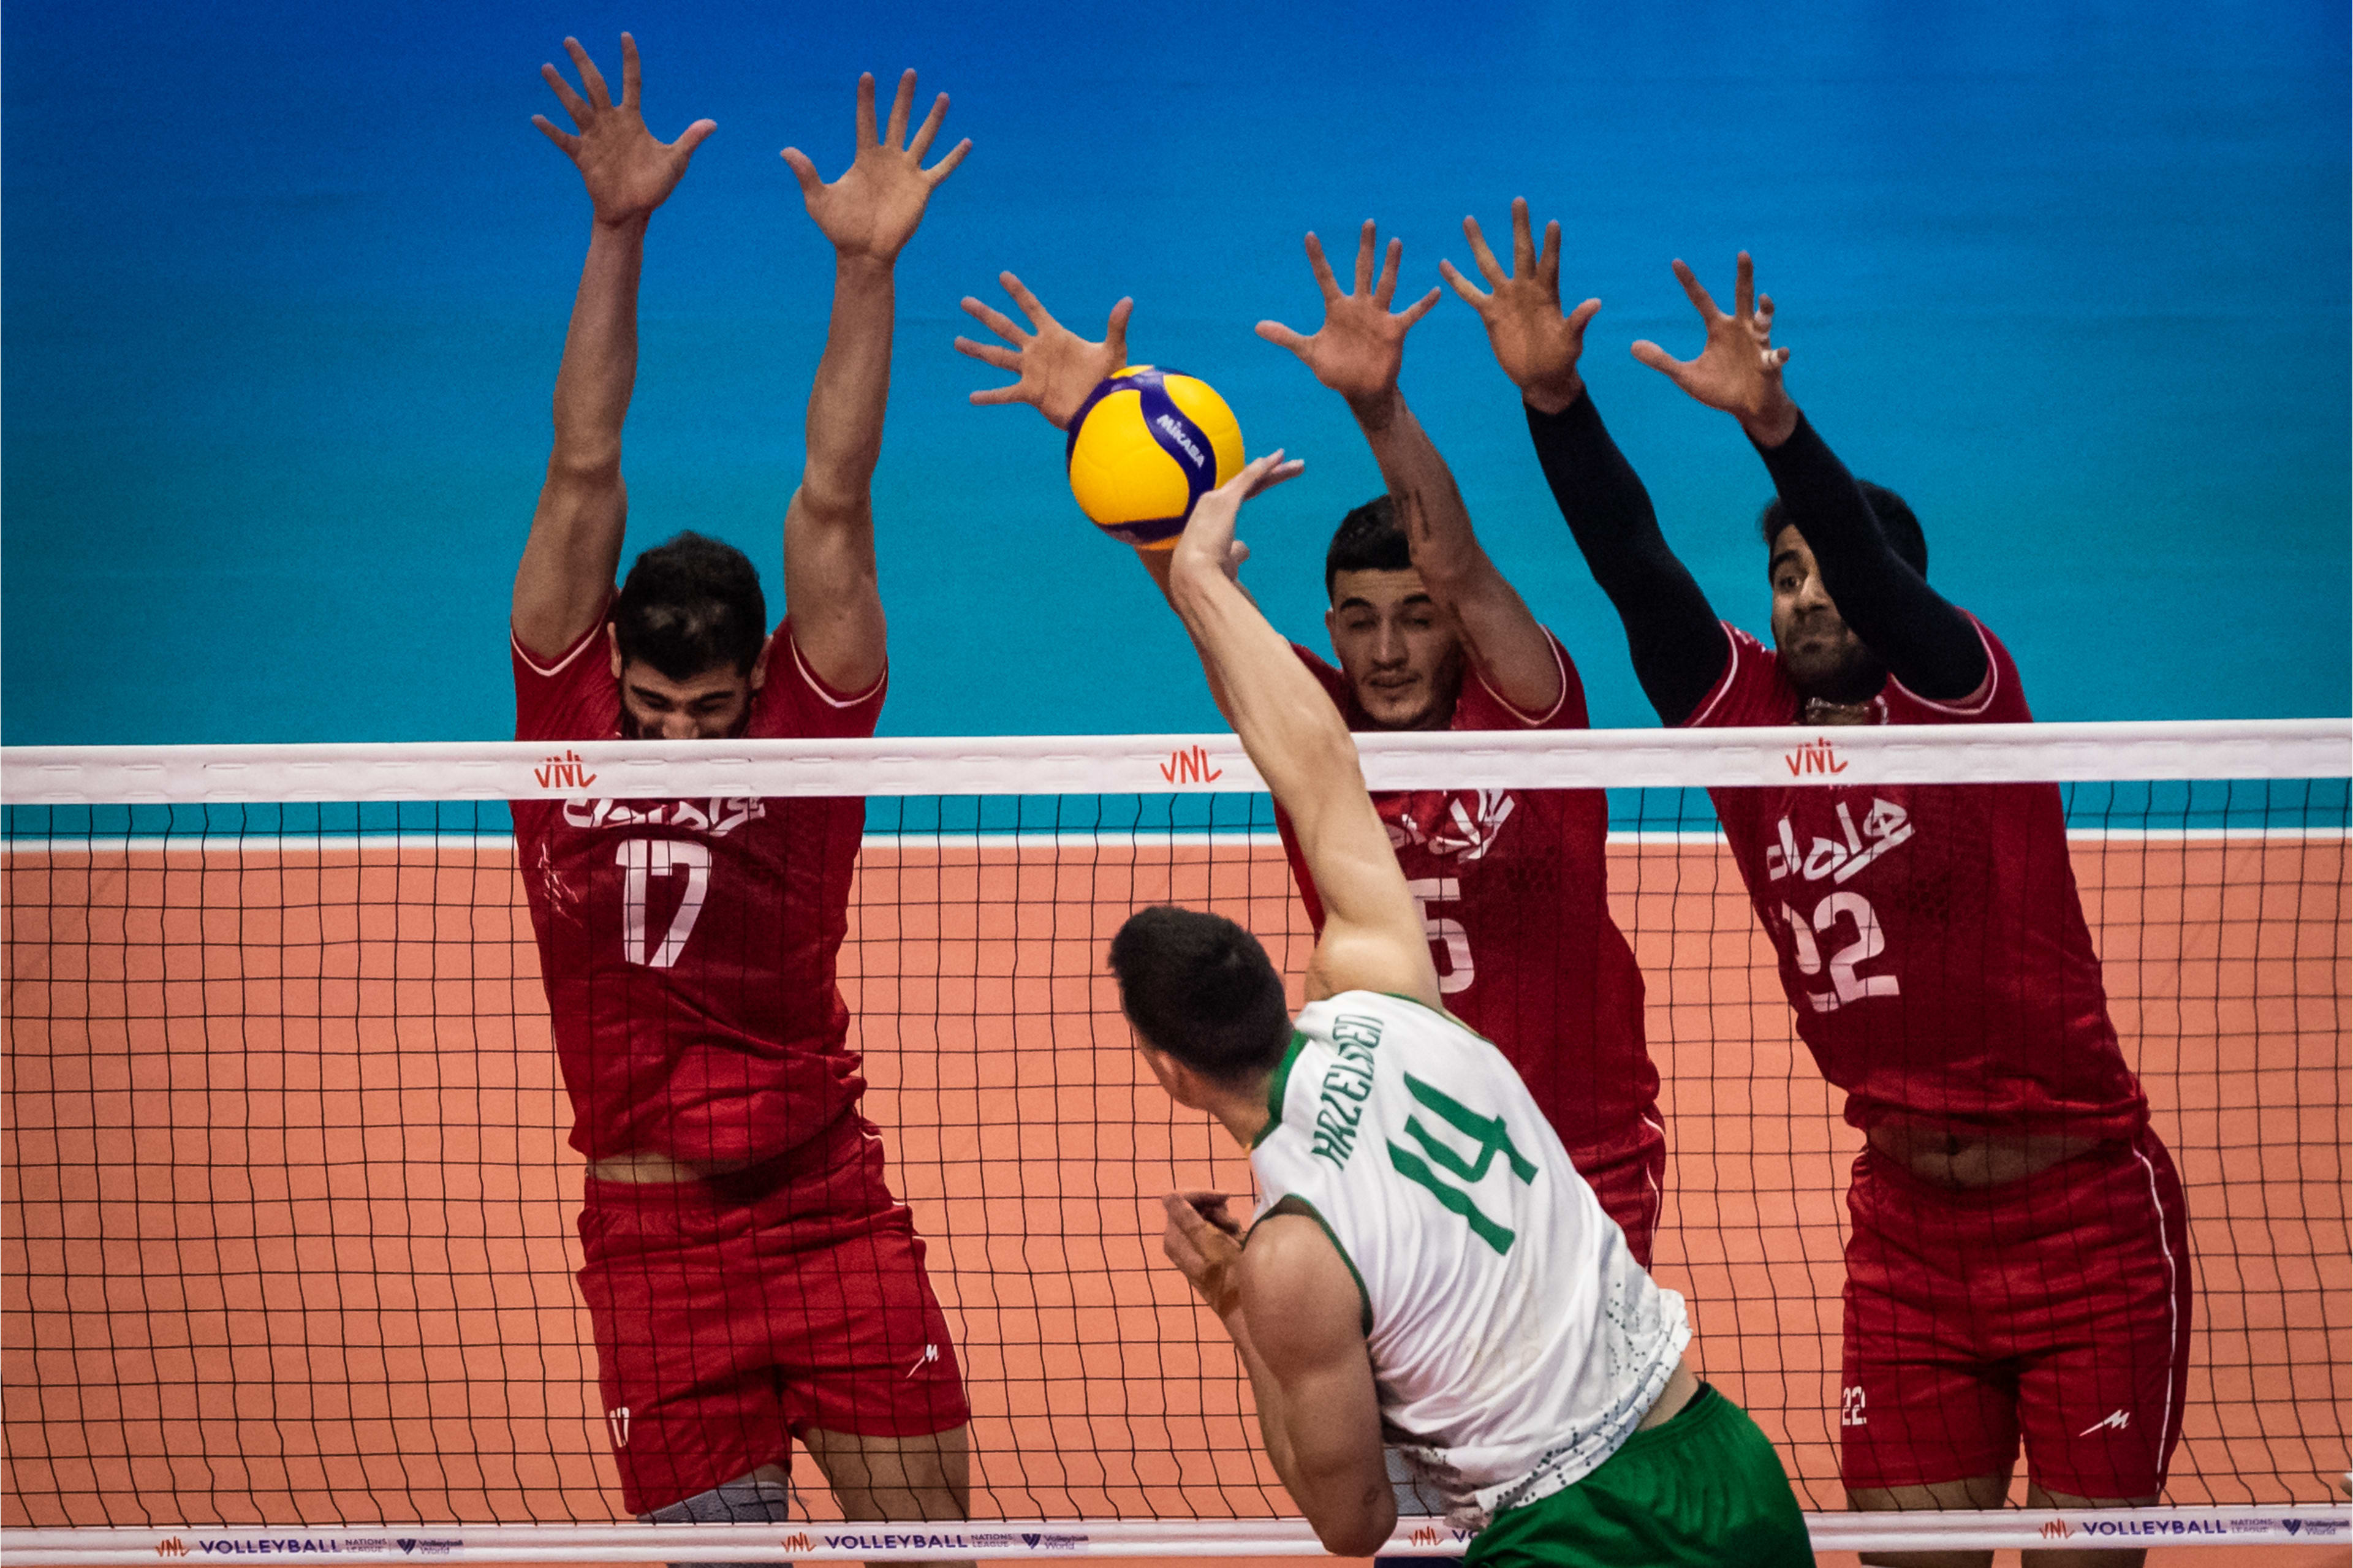 والیبال ایران استرالیا